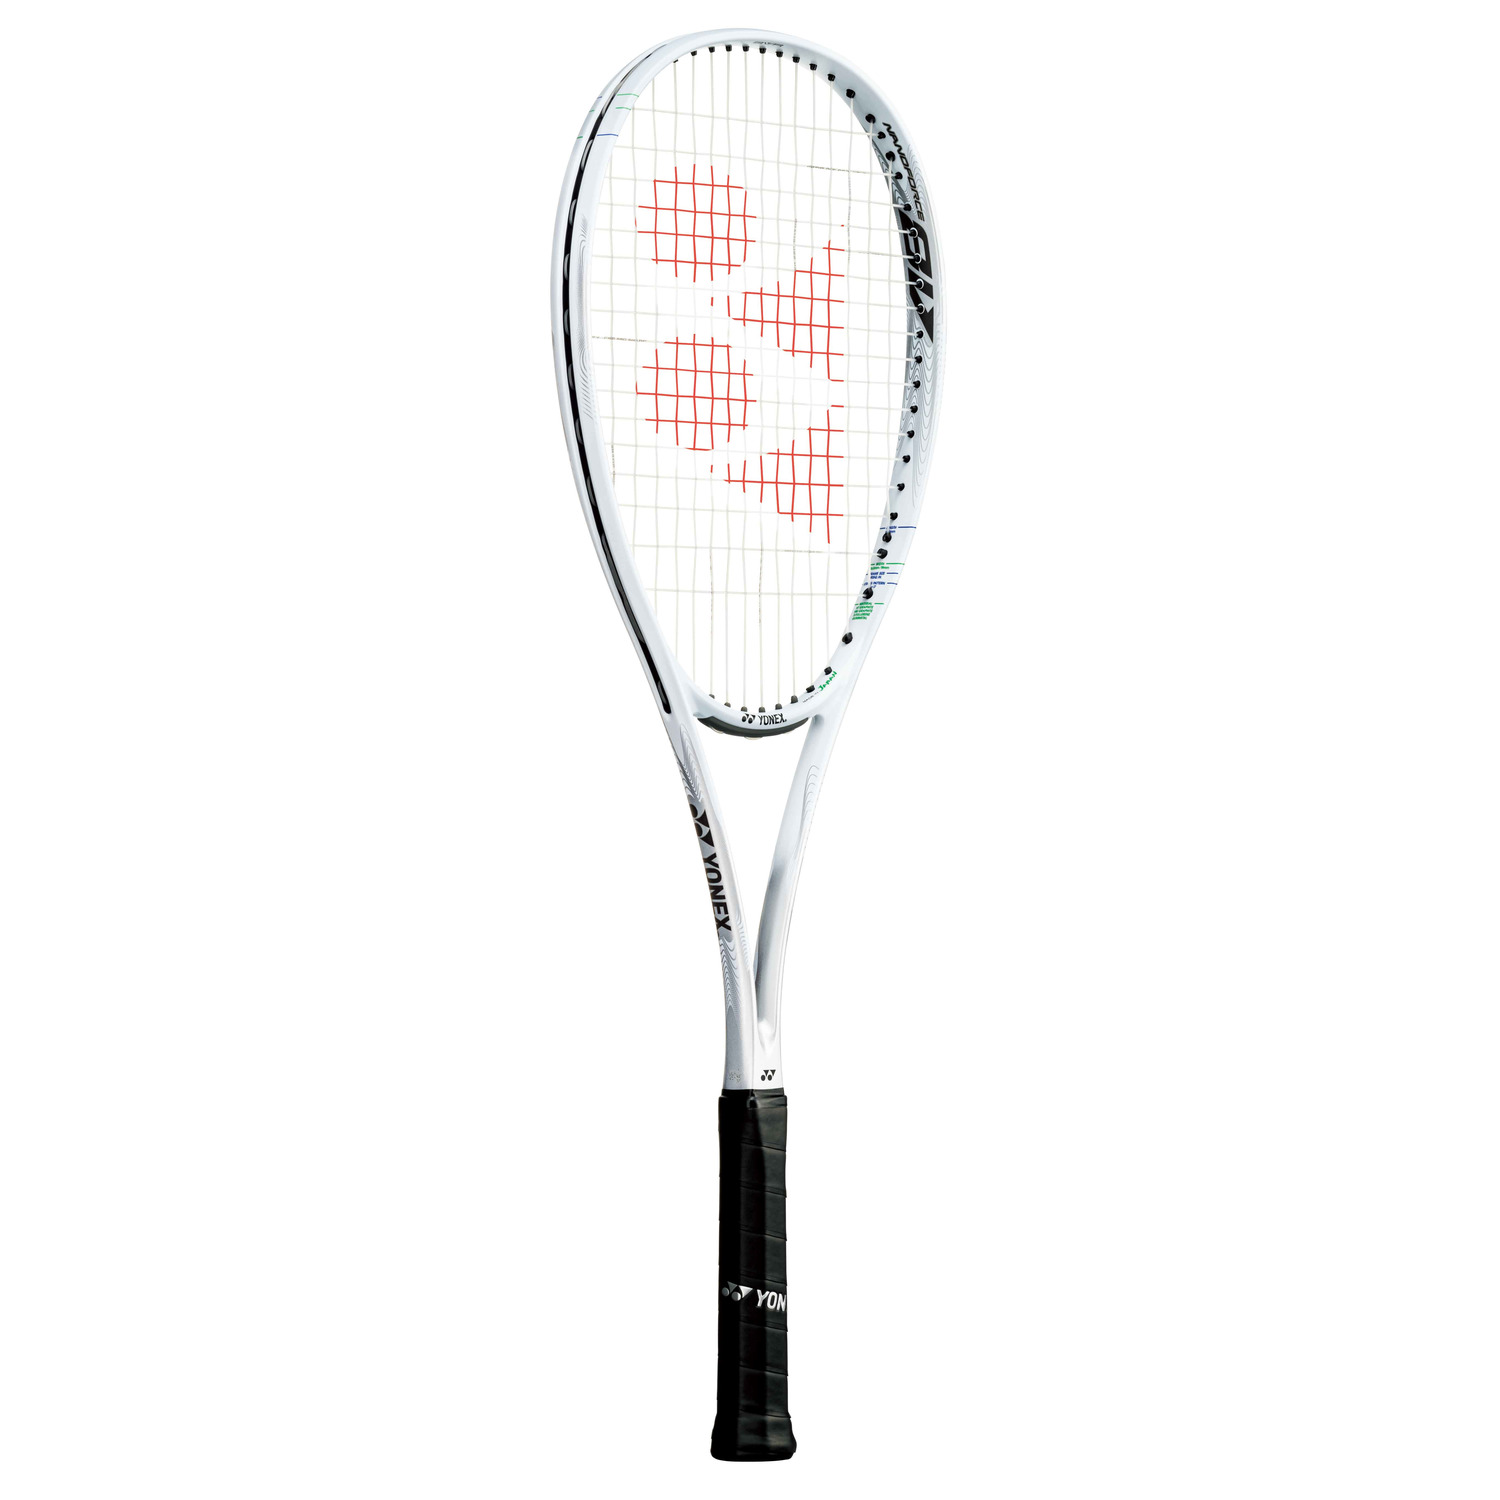 軟式テニスラケット NANO FORCE8V YONEX | innoveering.net